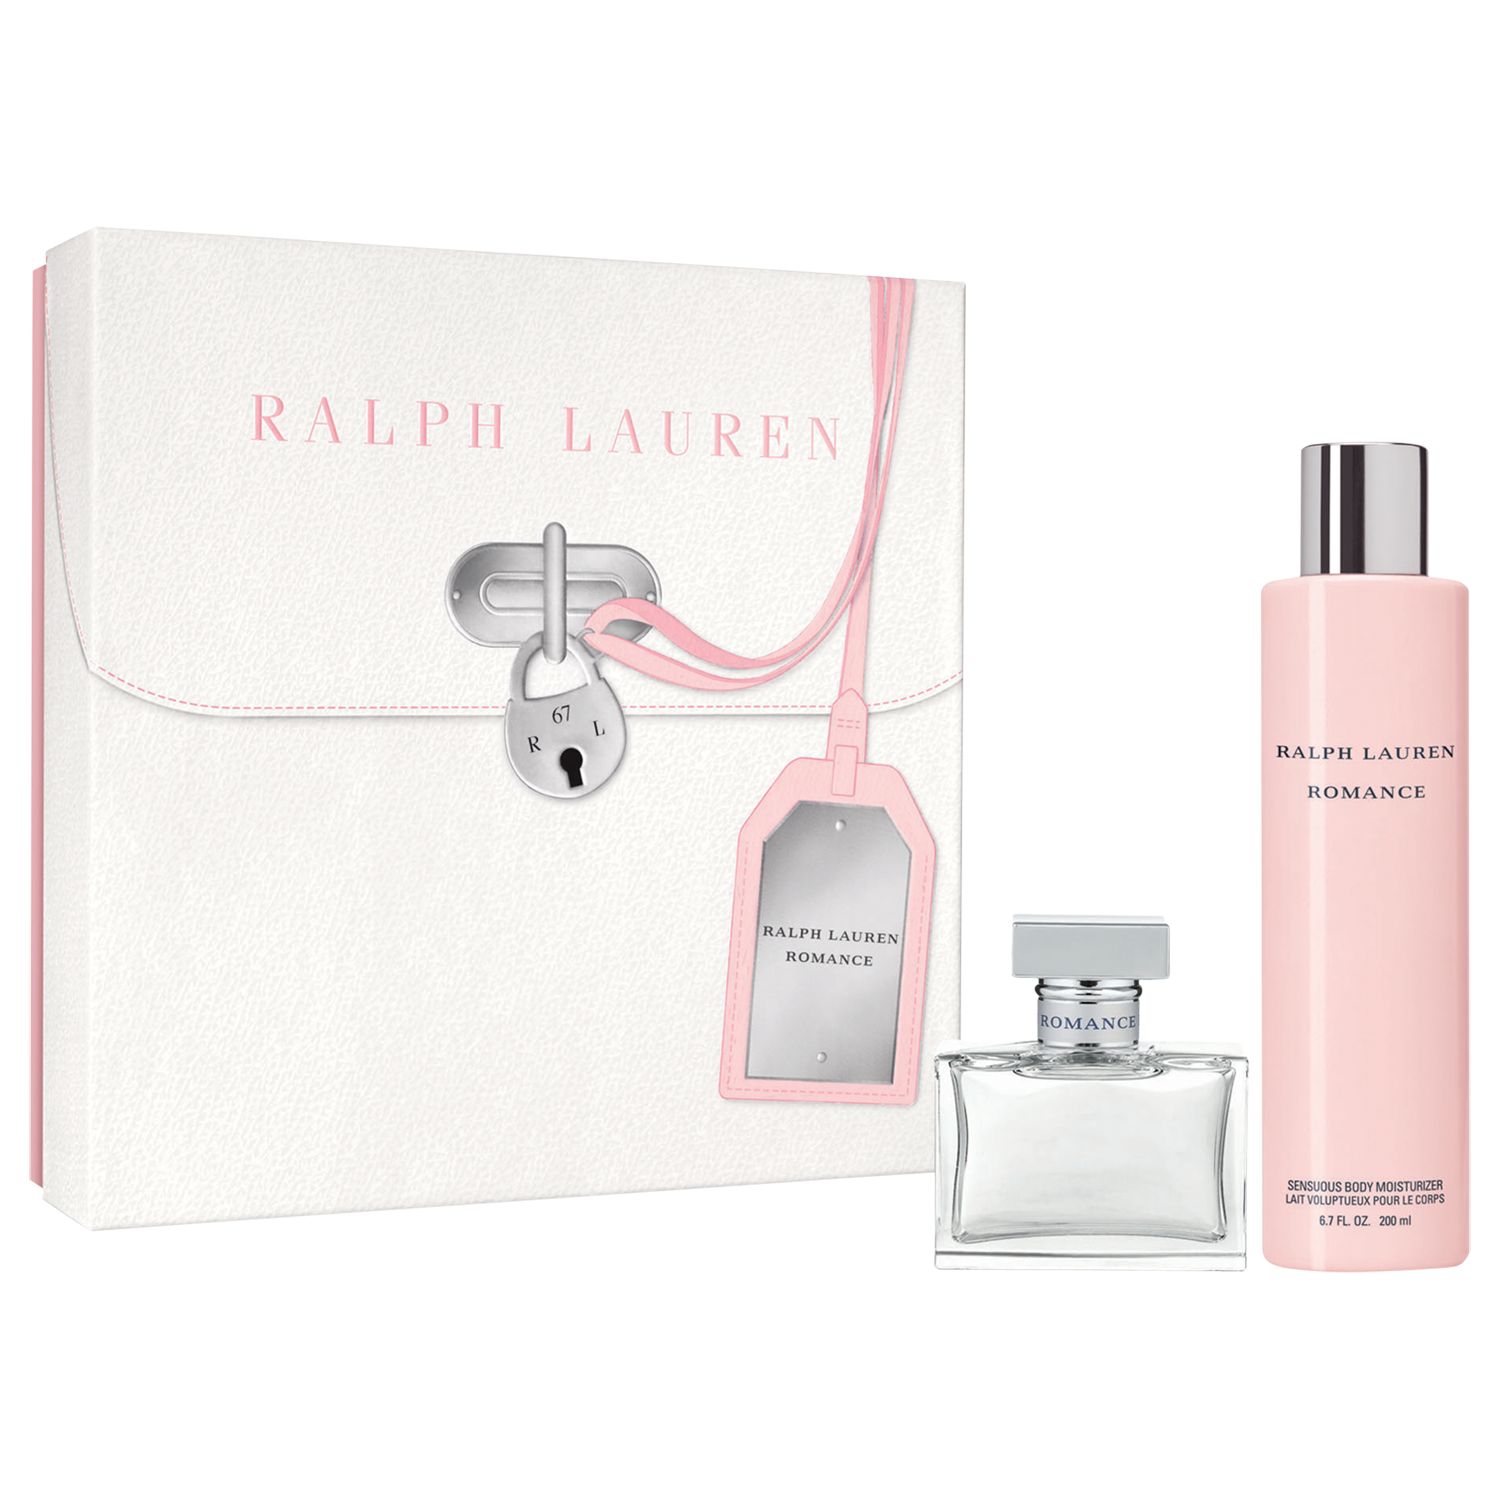 Ralph Lauren Romance Eau de Parfum 50ml Gift Set